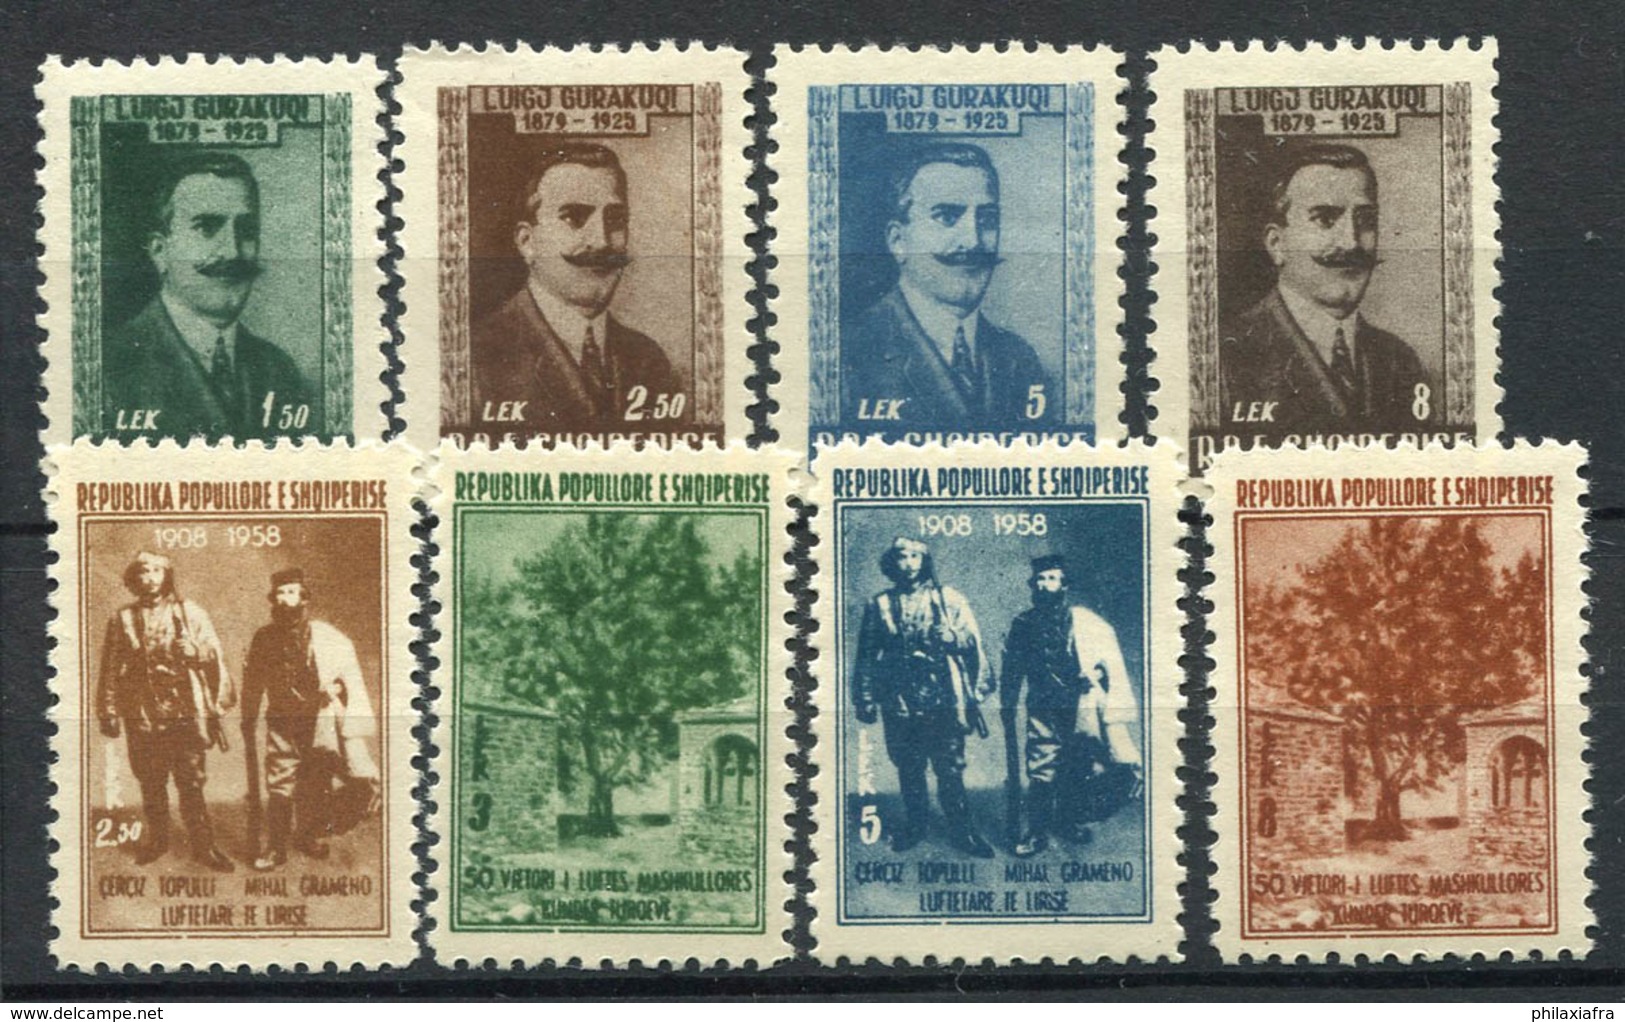 Albanie 1957 Mi. 560-567 Neuf ** 100% Gurakuqi, Mashkullore - Albanie